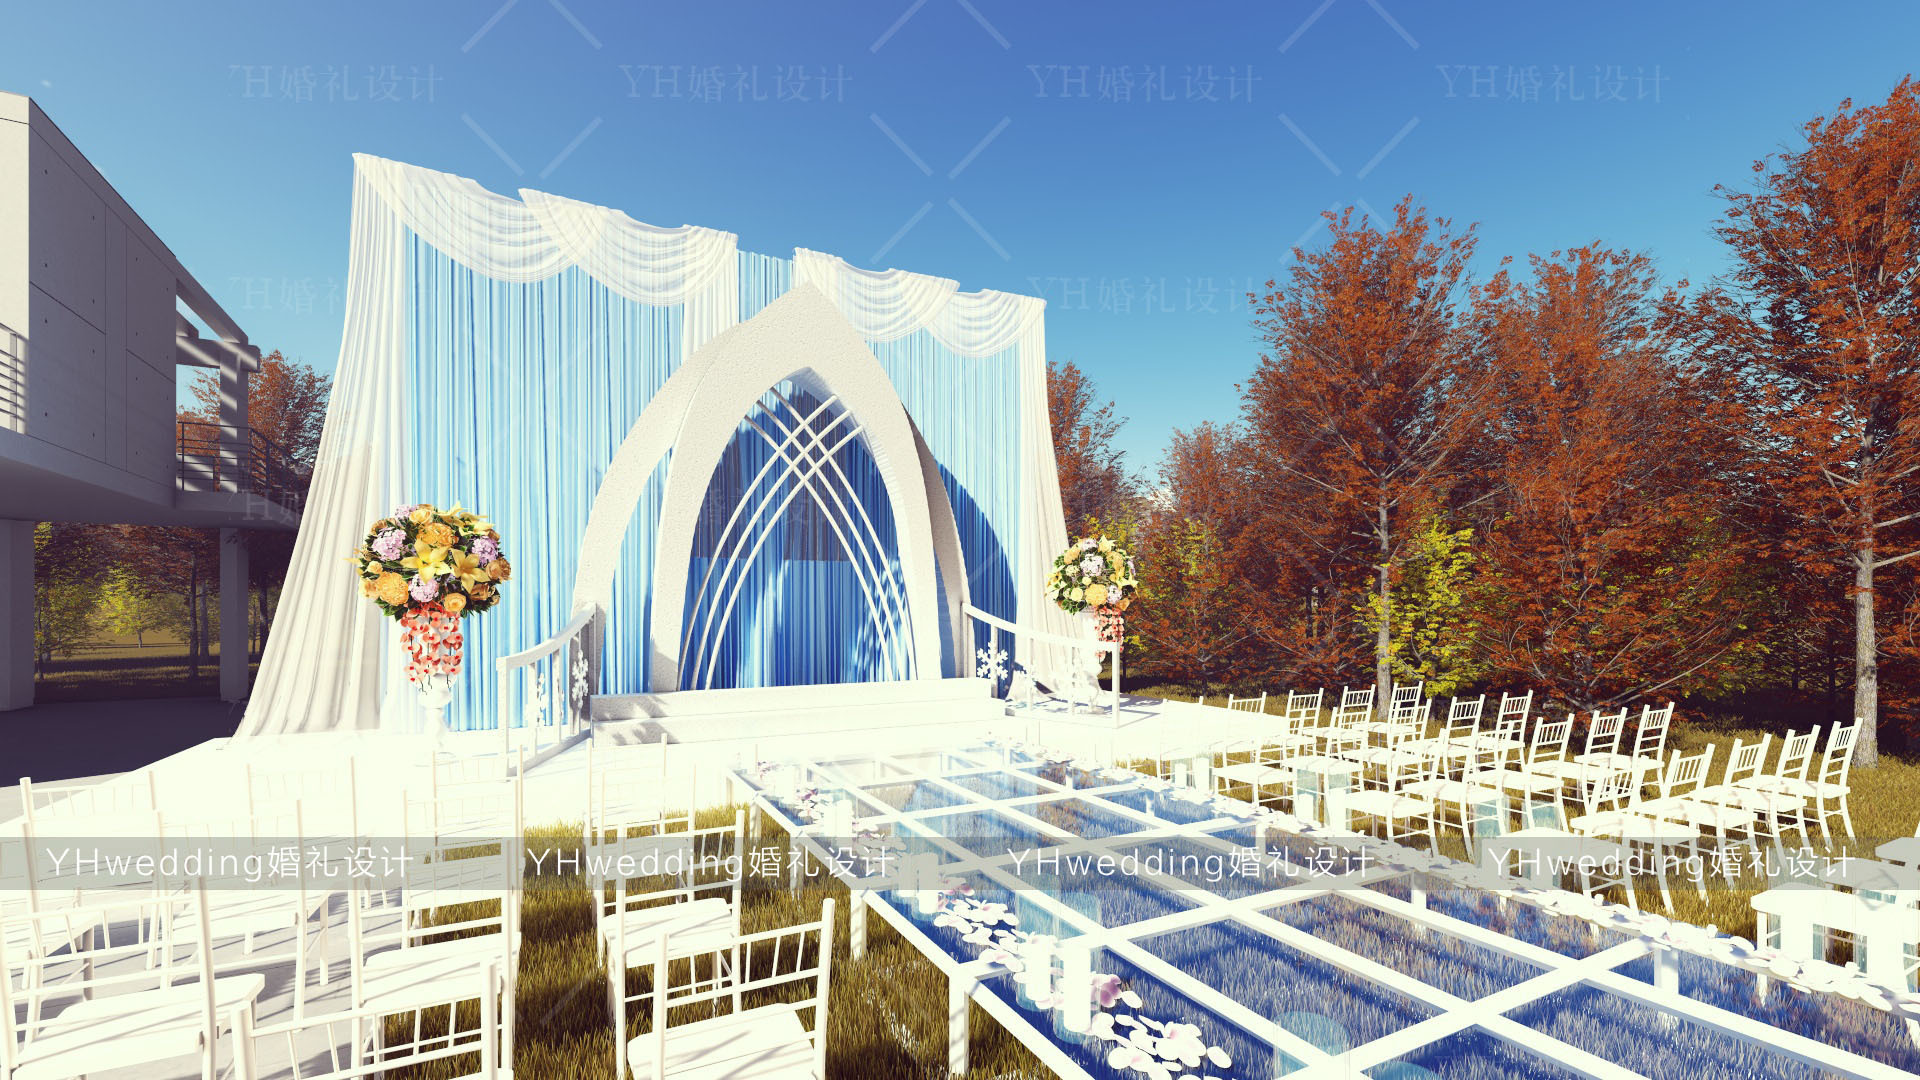 YHwedding婚礼设计 户外婚礼3D效果图 泳池别